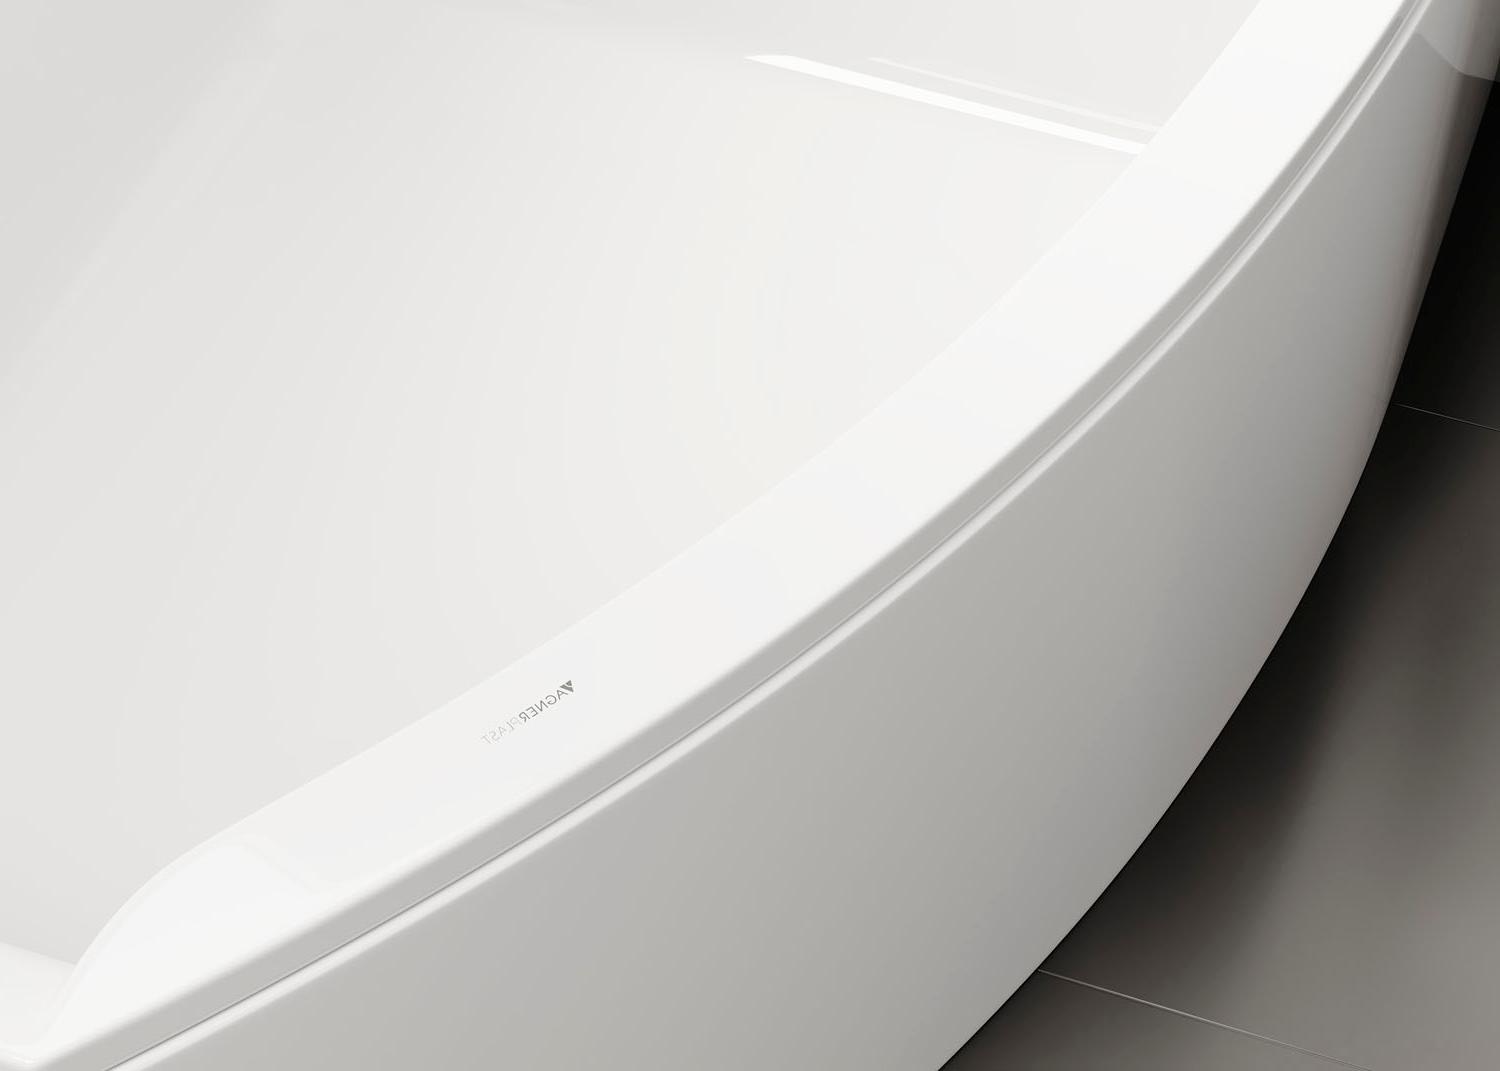 Акриловая ванна Vagnerplast Veronela Offset 160x105 Right фото